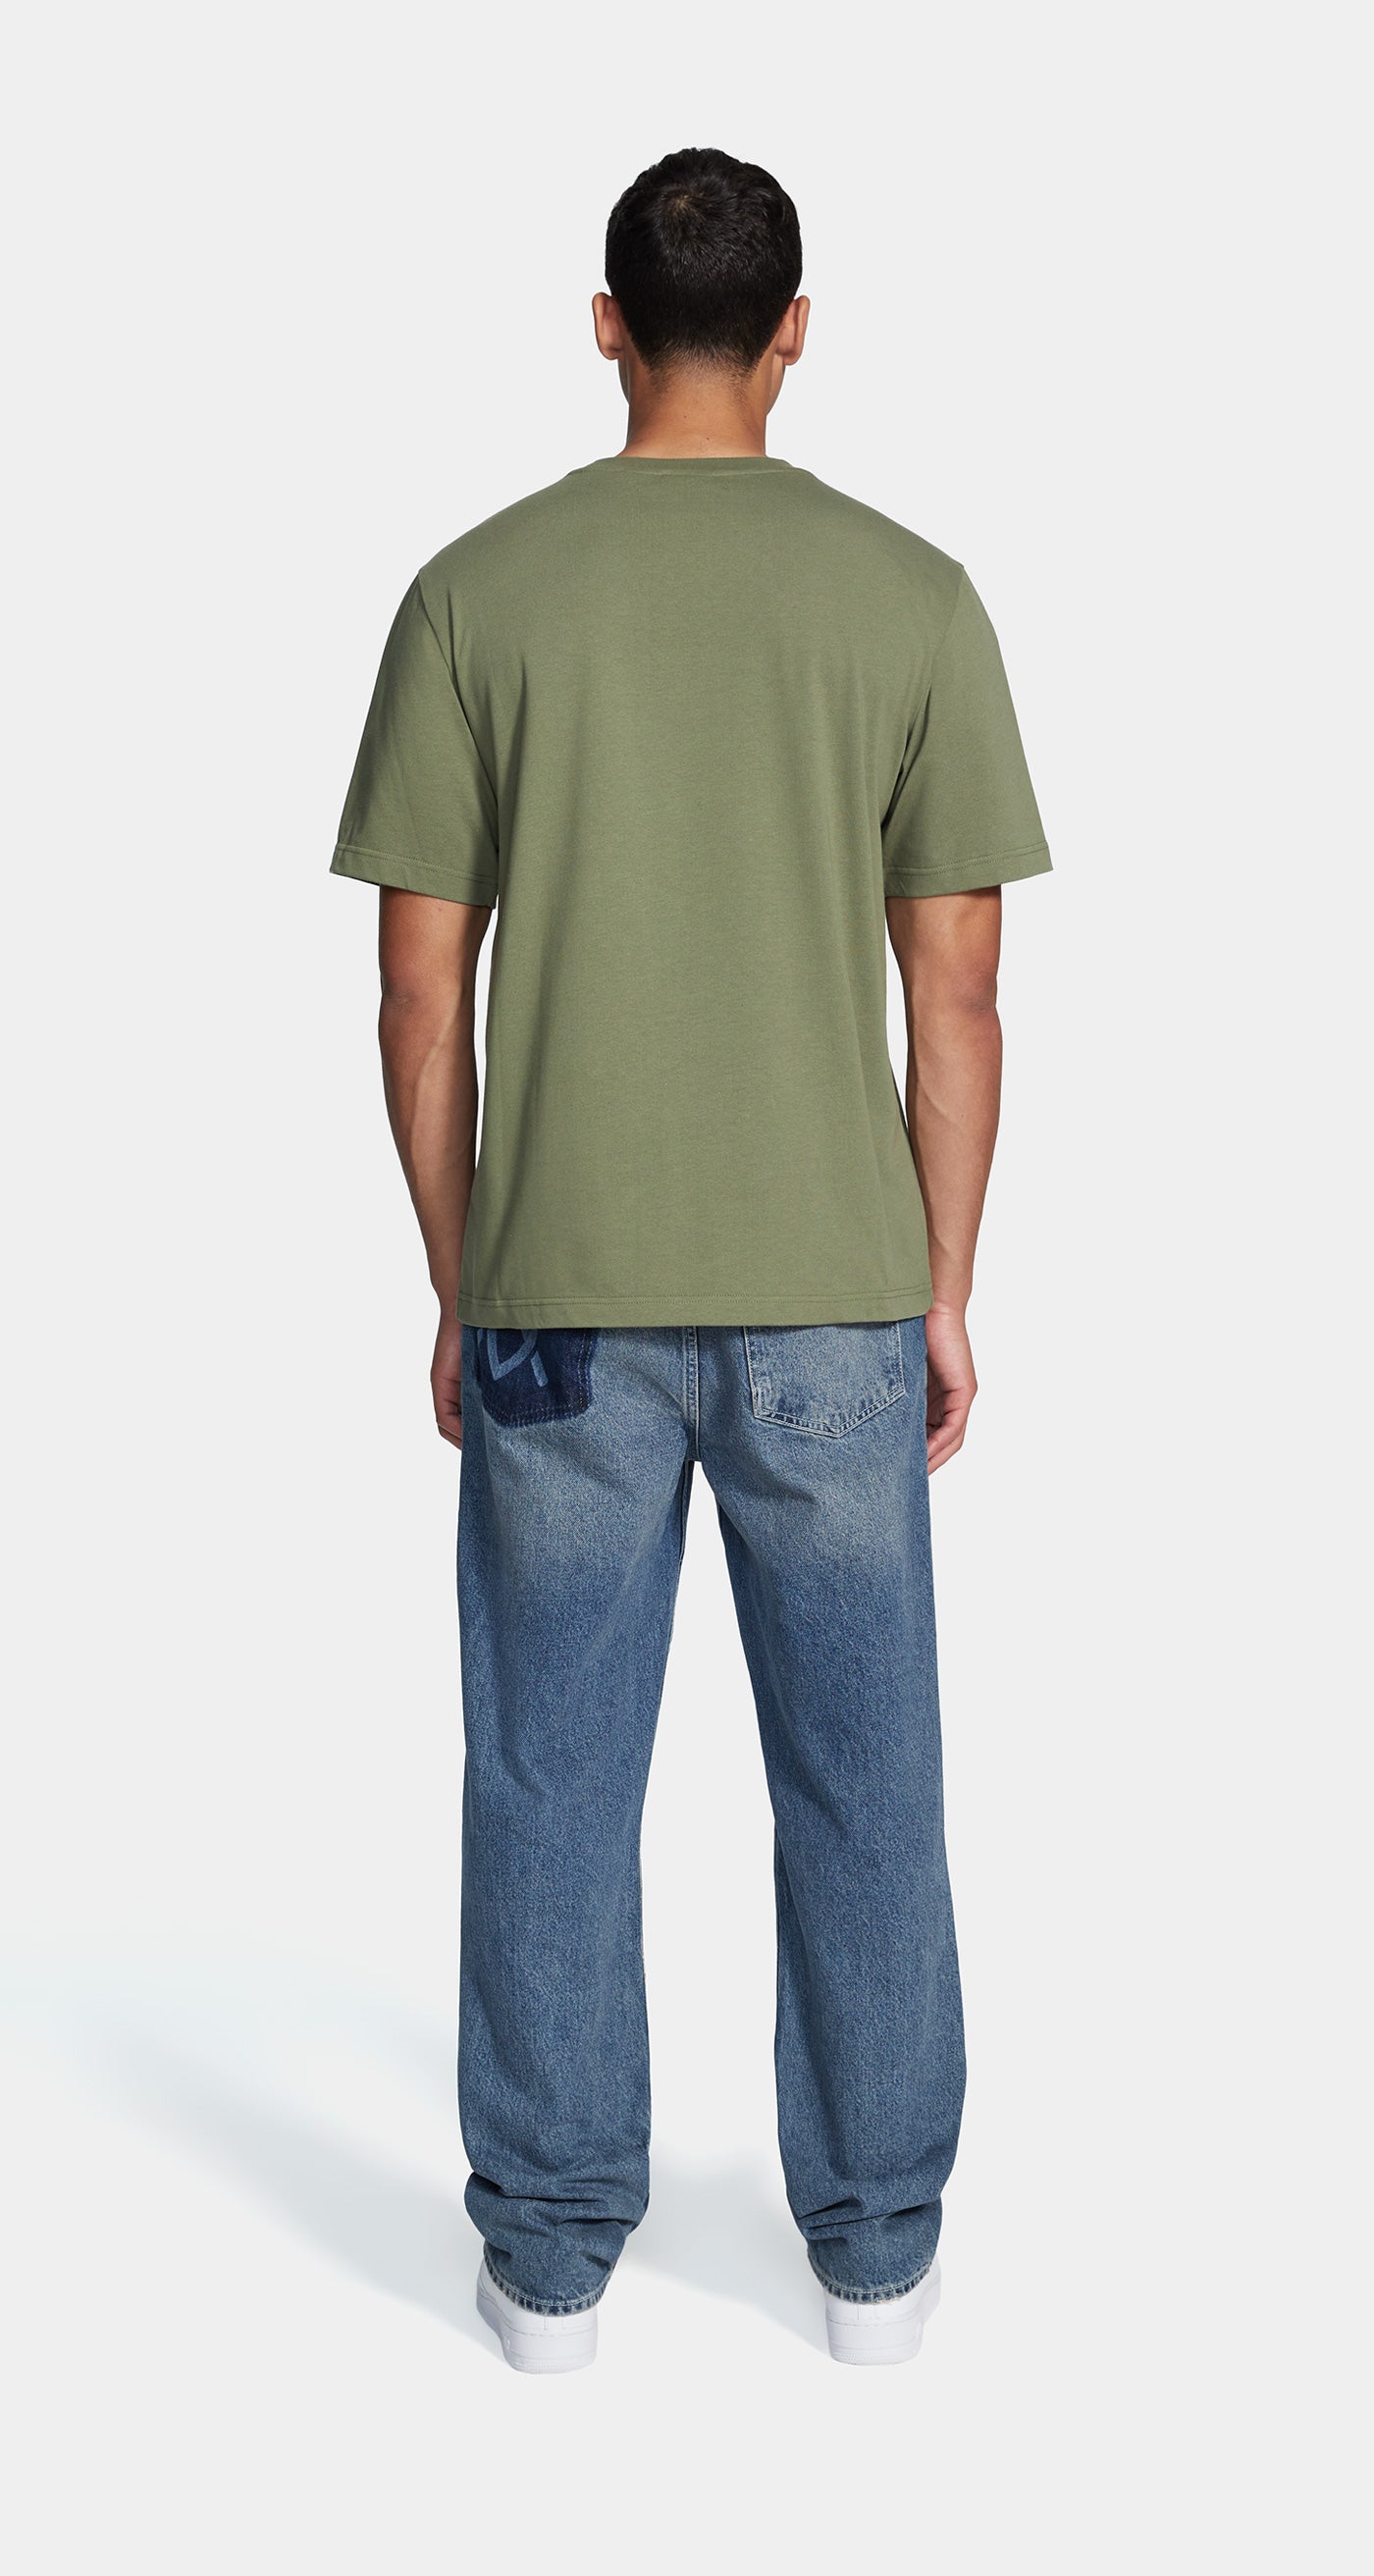 DP - Clover Green Circle T-Shirt - Men - Rear